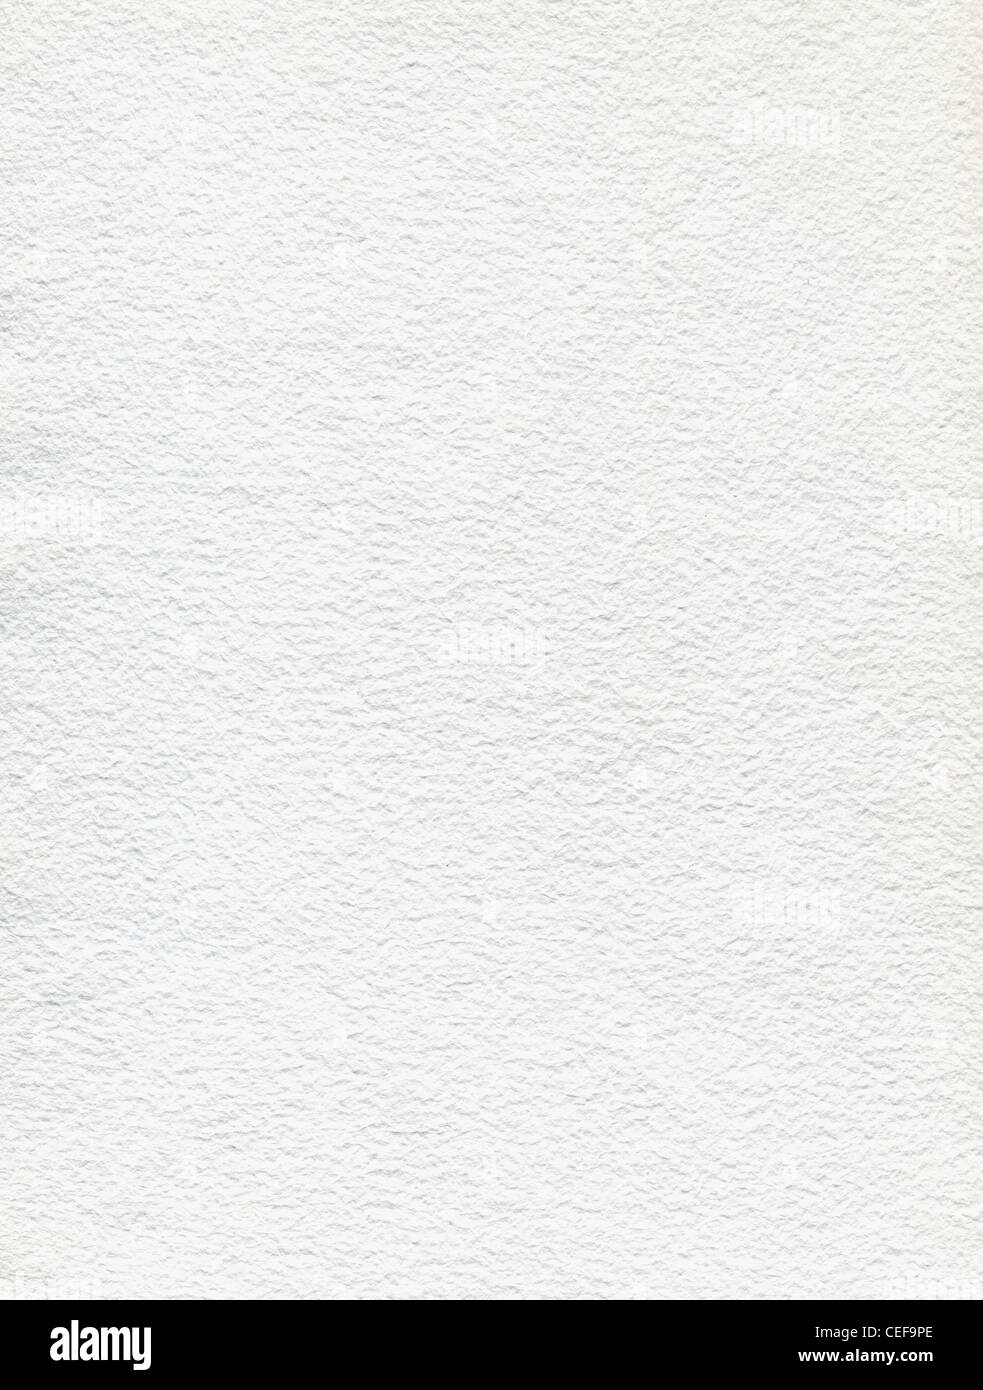 Hechos a mano en papel blanco, blanco abstracto fondo neutro Foto de stock